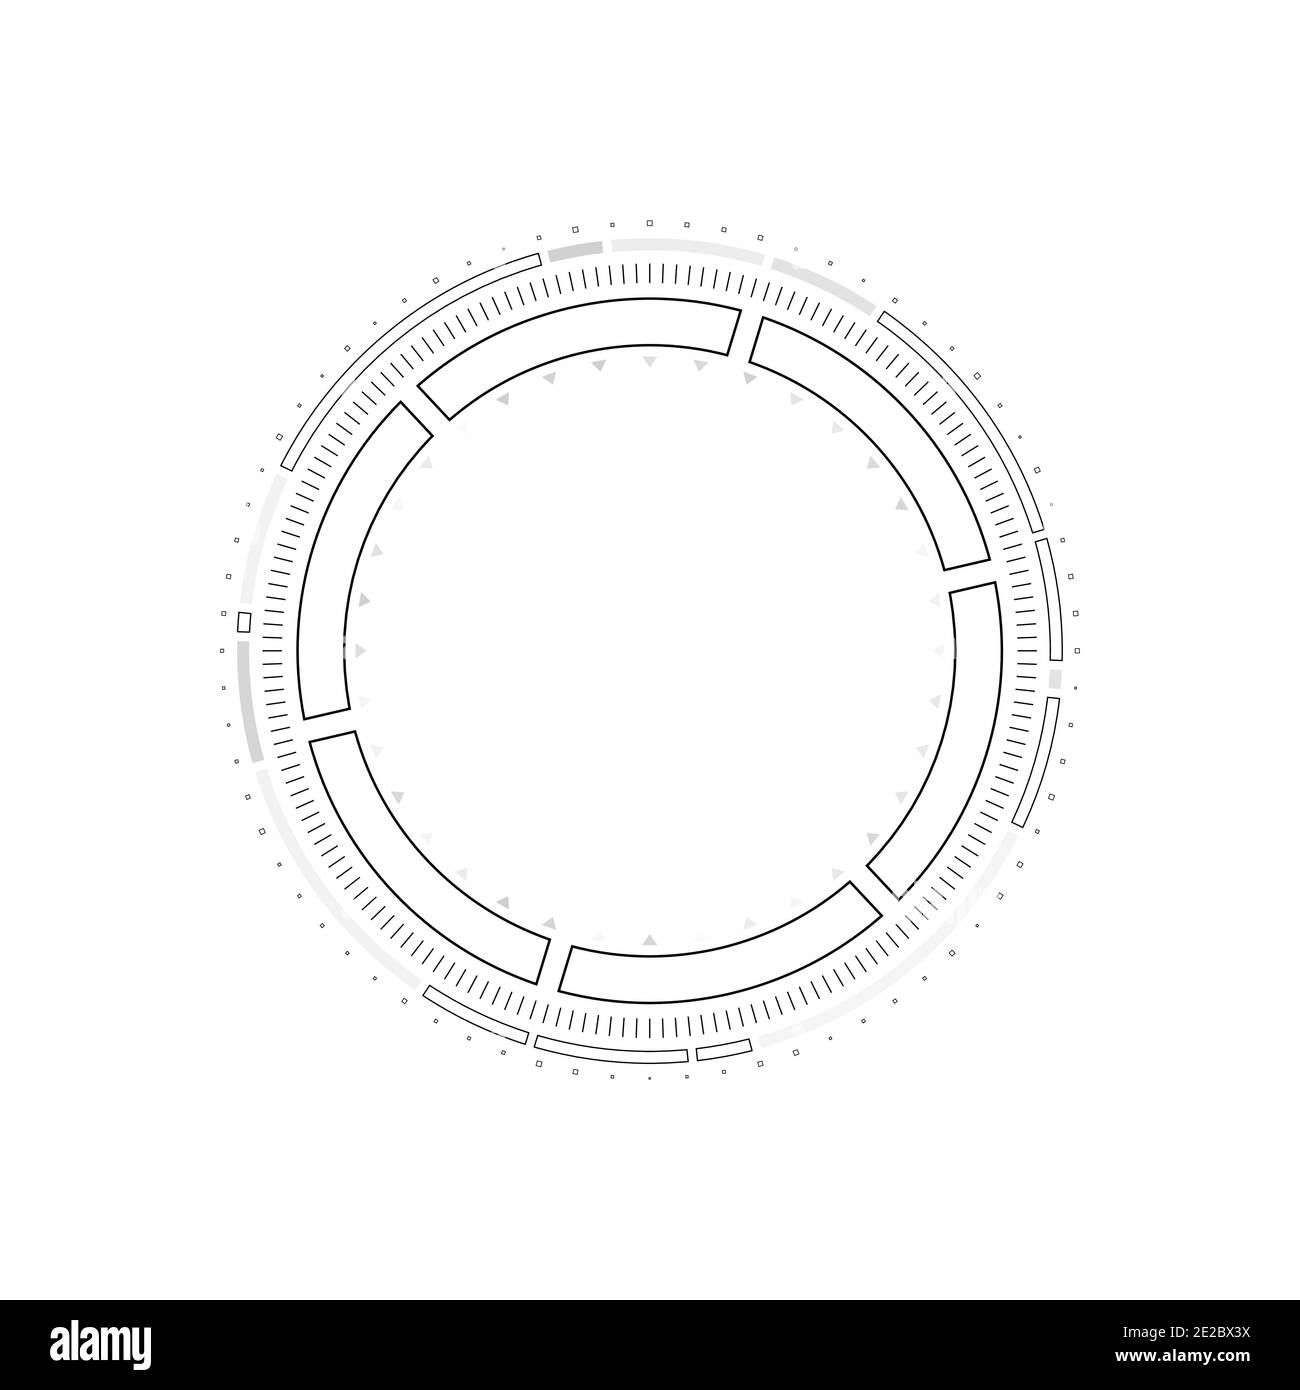 Elementi infografici del cerchio HUD. Display head-up rotondo sci-fi per interfaccia utente futuristica HUD, GUI. Tema tecnico e scientifico. Illustrazione vettoriale. Illustrazione Vettoriale